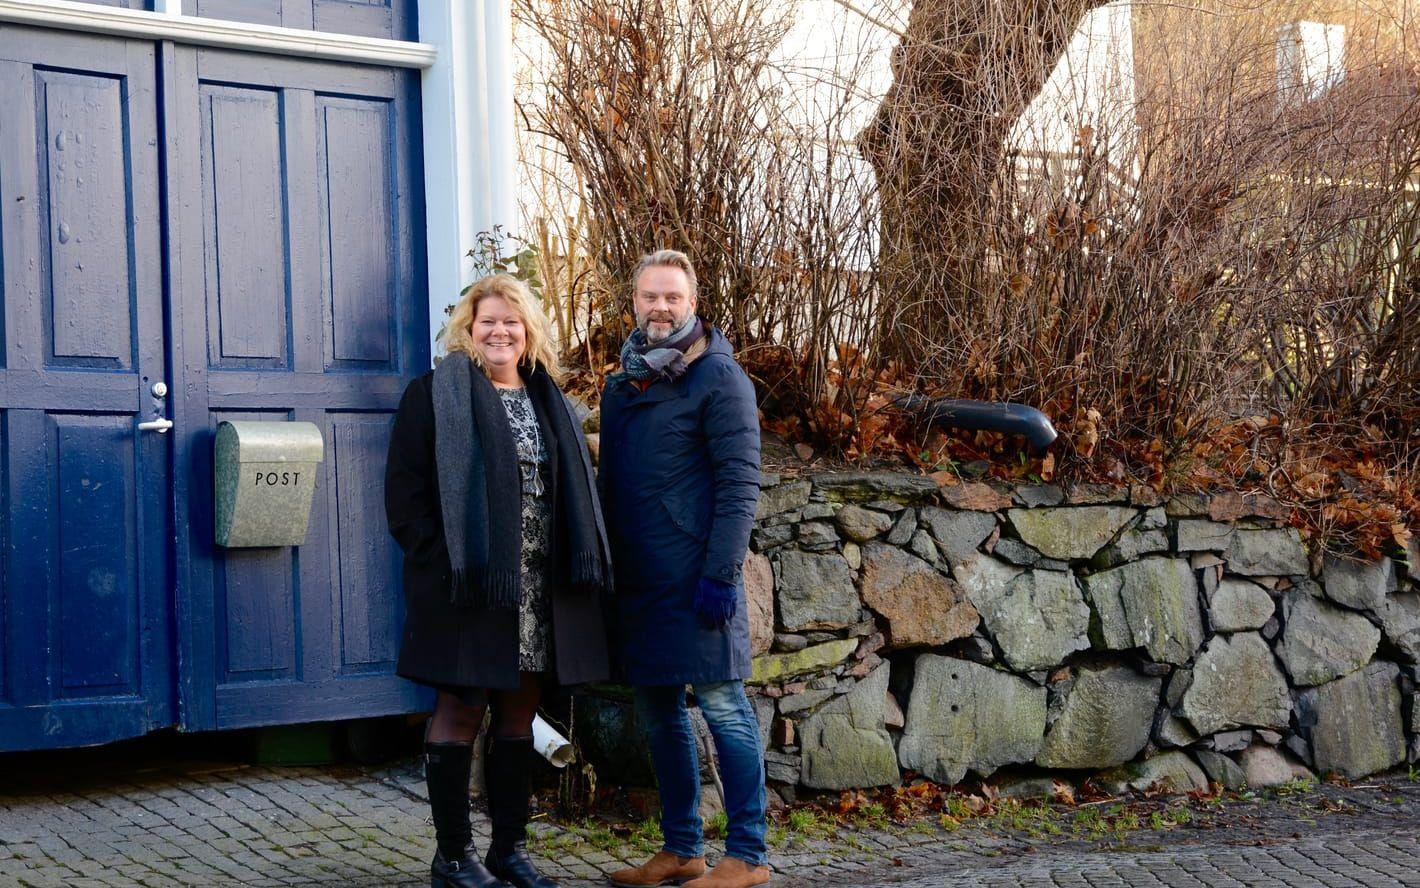 "Jontefonden har gett oss något att samlas kring innan Jonathan dog och även efter", säger Gunilla och Tommy Ivarsson. Bild: Karina Hansson